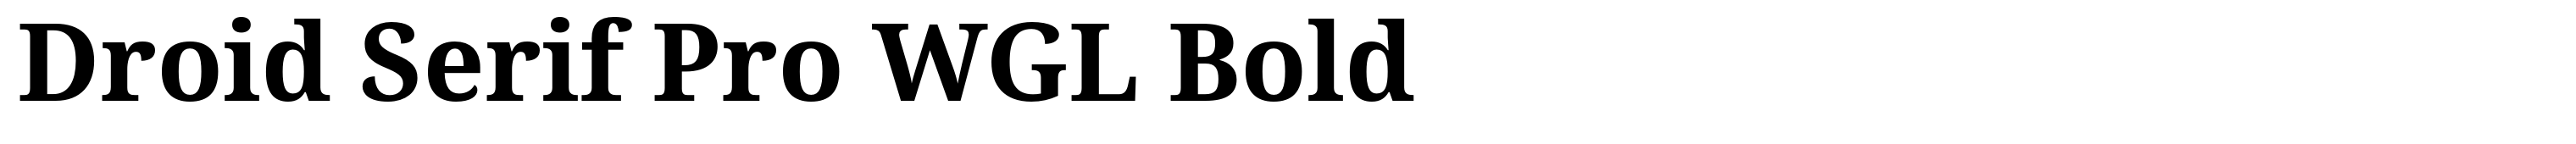 Droid Serif Pro WGL Bold